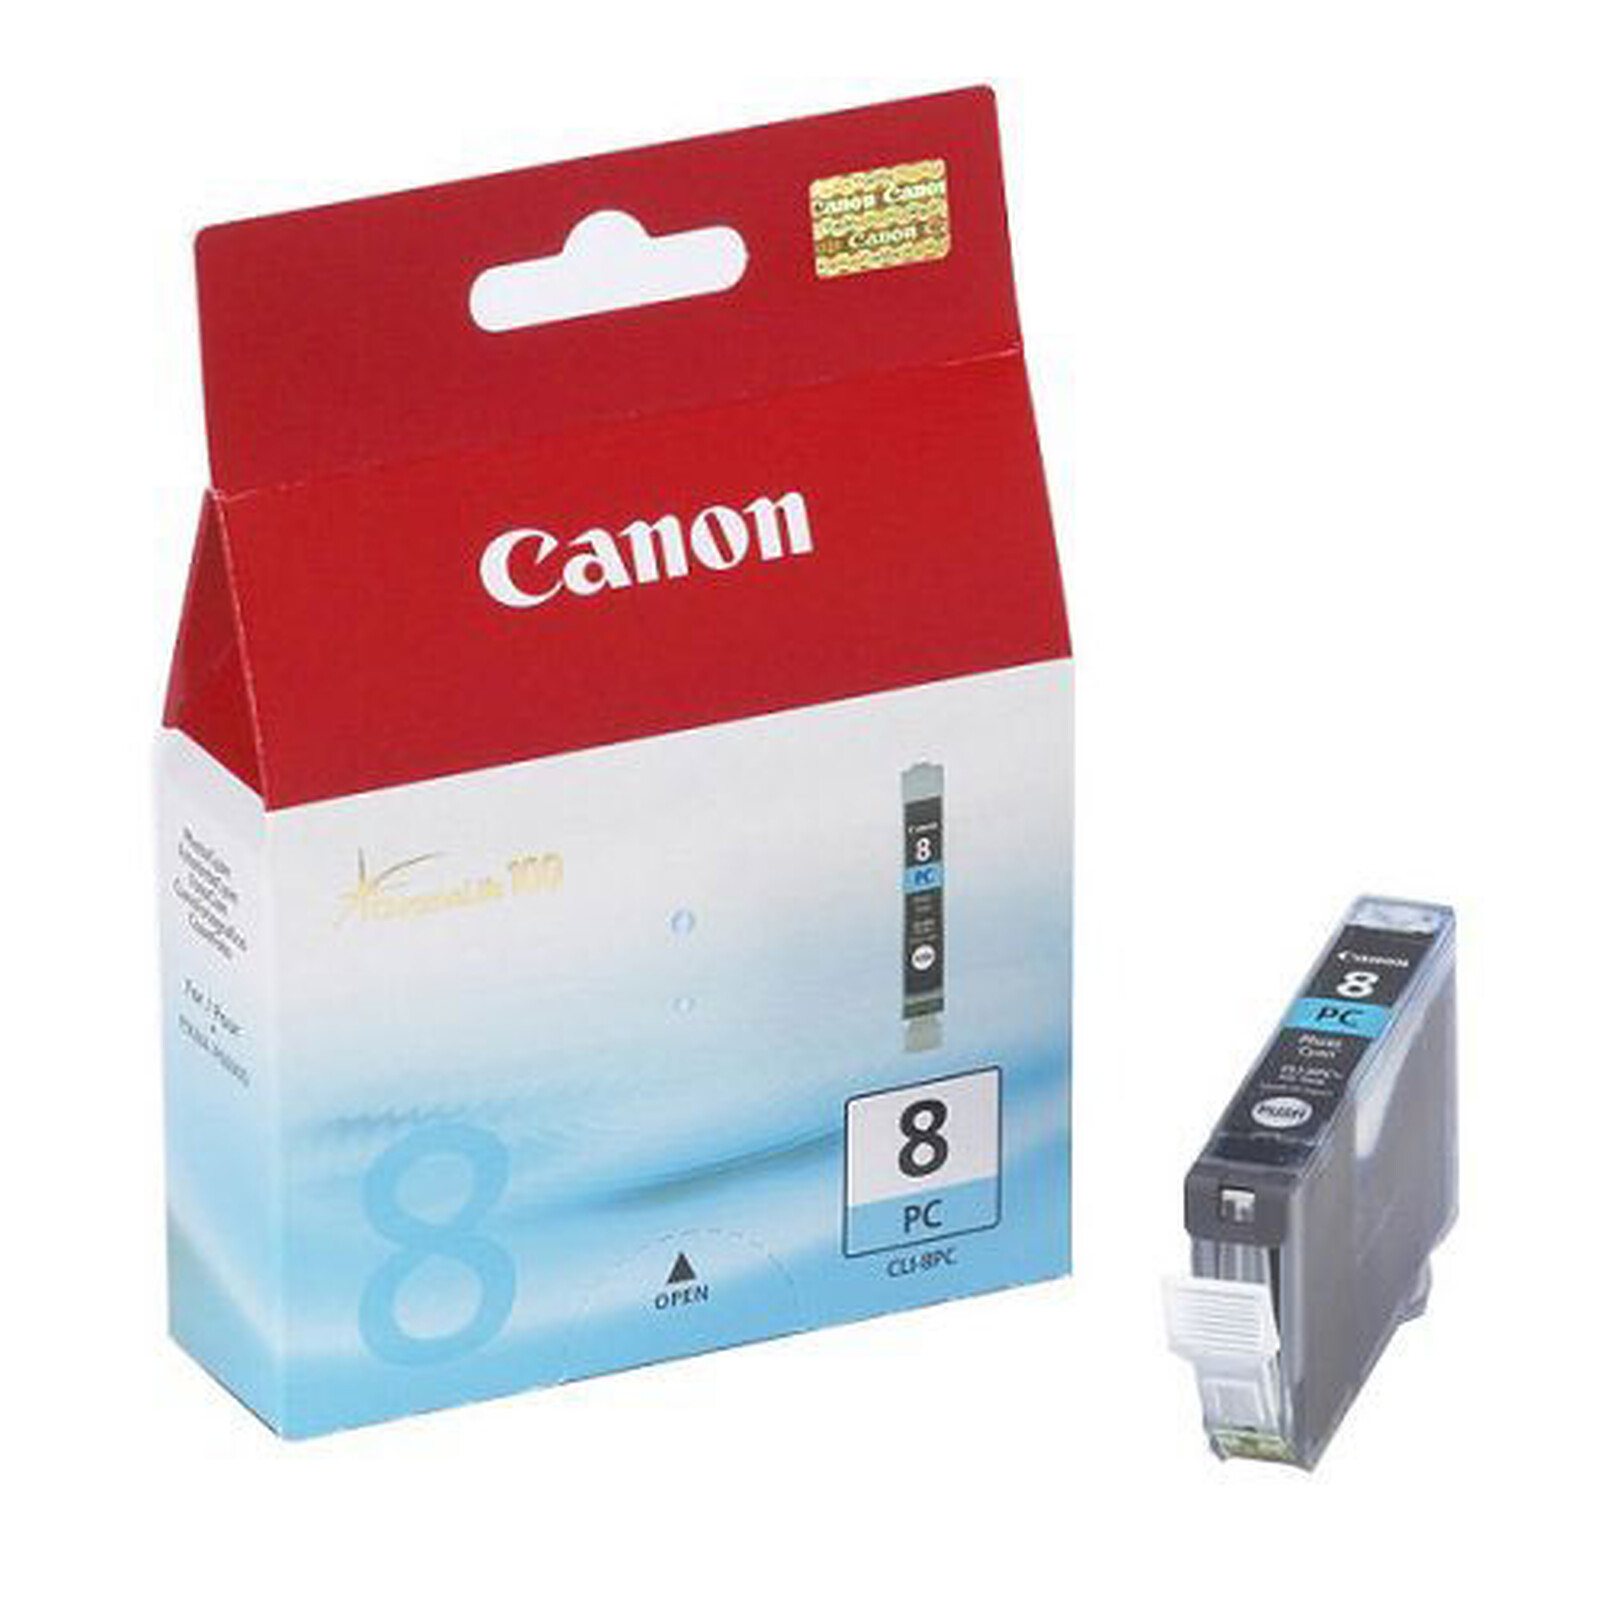 Canon PG-560XL/CL-561XL Photo Value Pack - Cartouche imprimante - LDLC